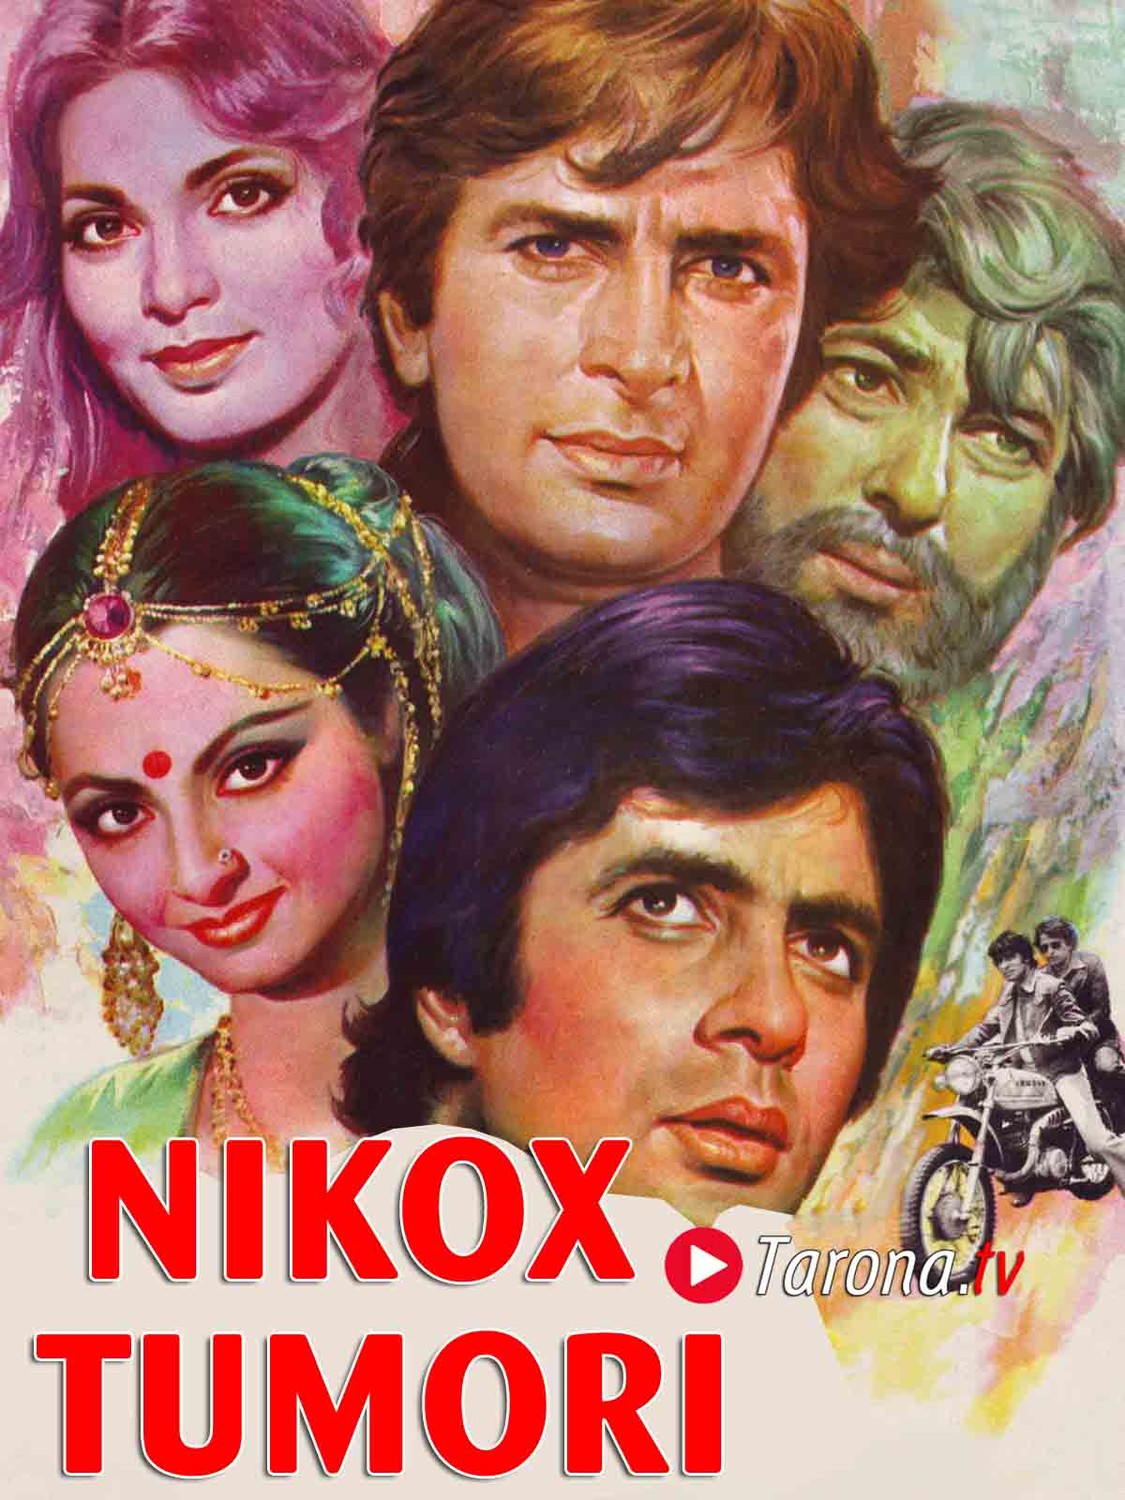 Nikox Tumori Hind klassik kinosi, Uzbek tilida Amitabh Bachchan